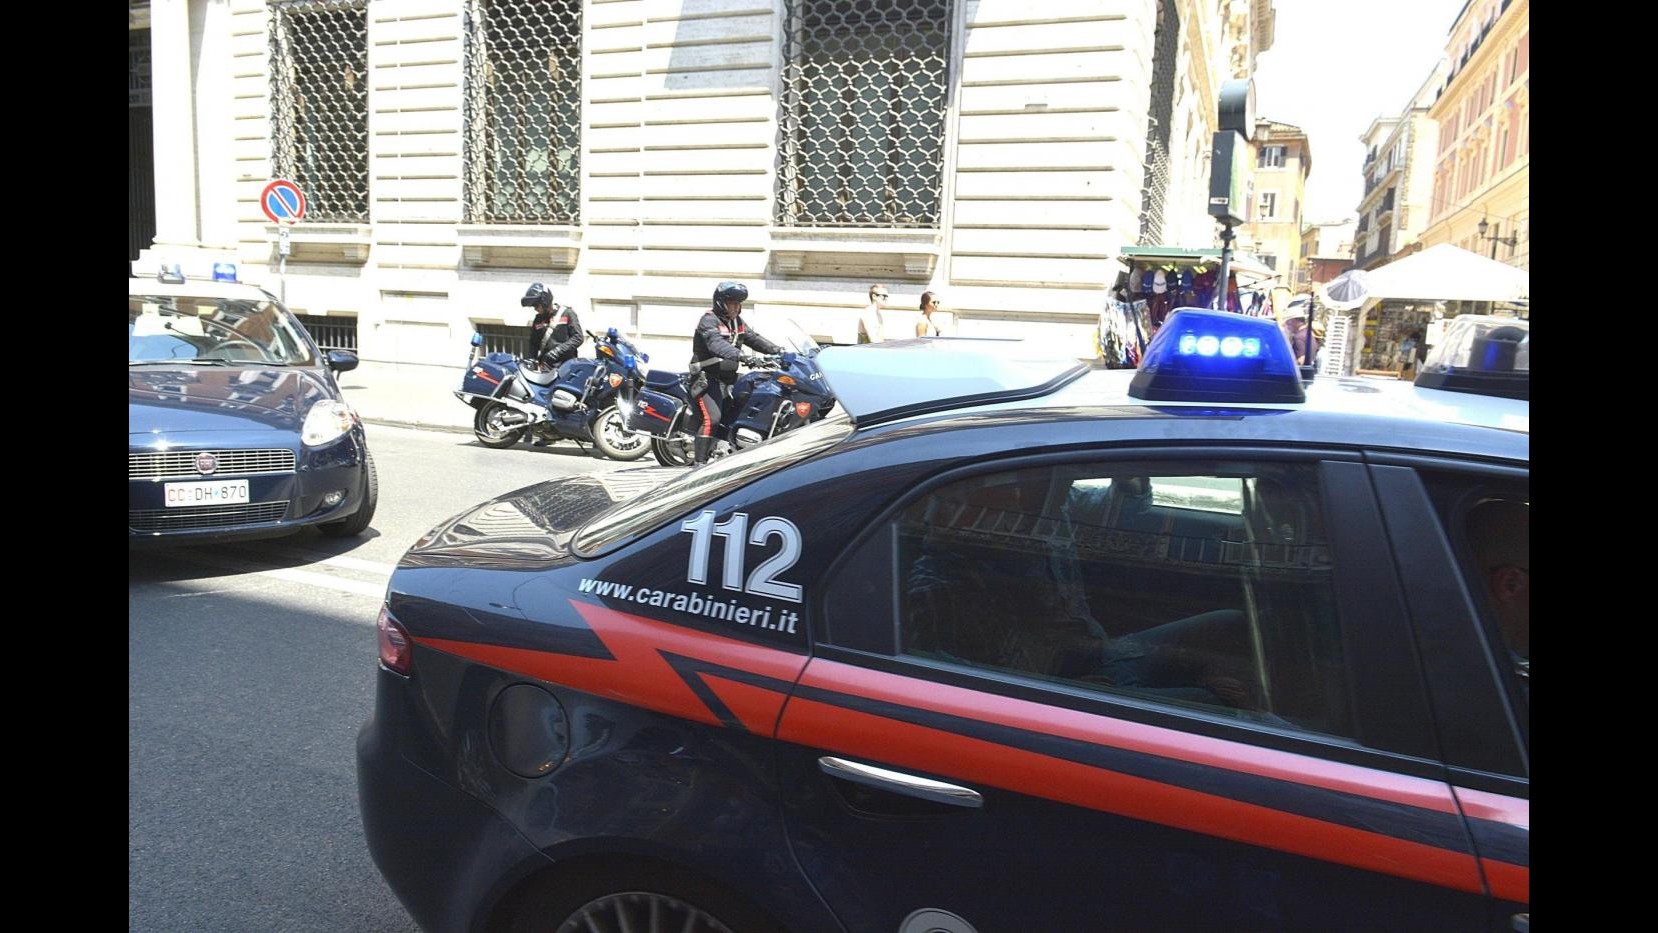 Milano, ex fidanzato la pedina e lei si dirige in caserma: arrestato